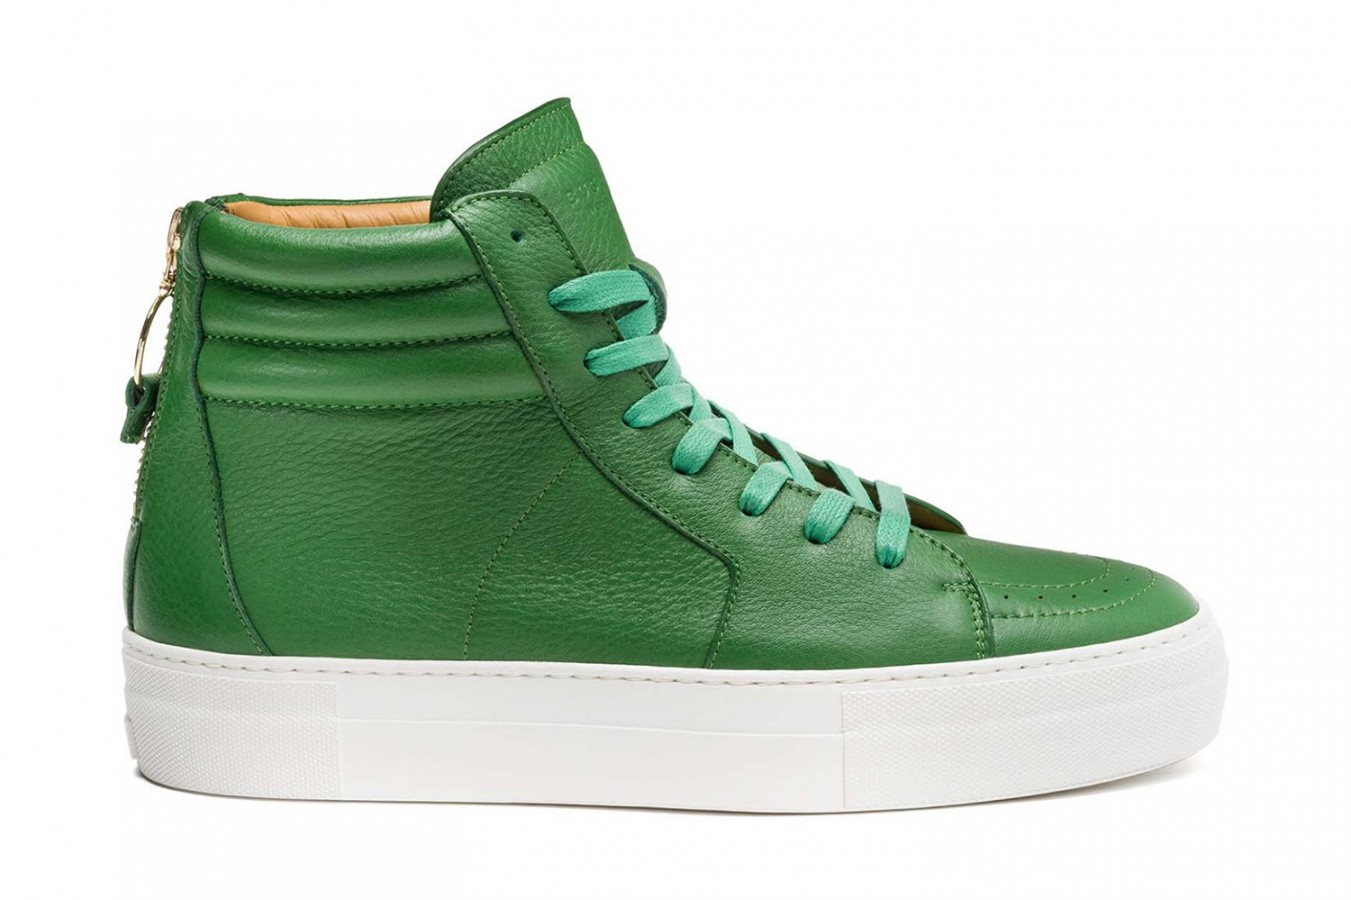 Sneaker Watch: Buscemi 140MM “Green”